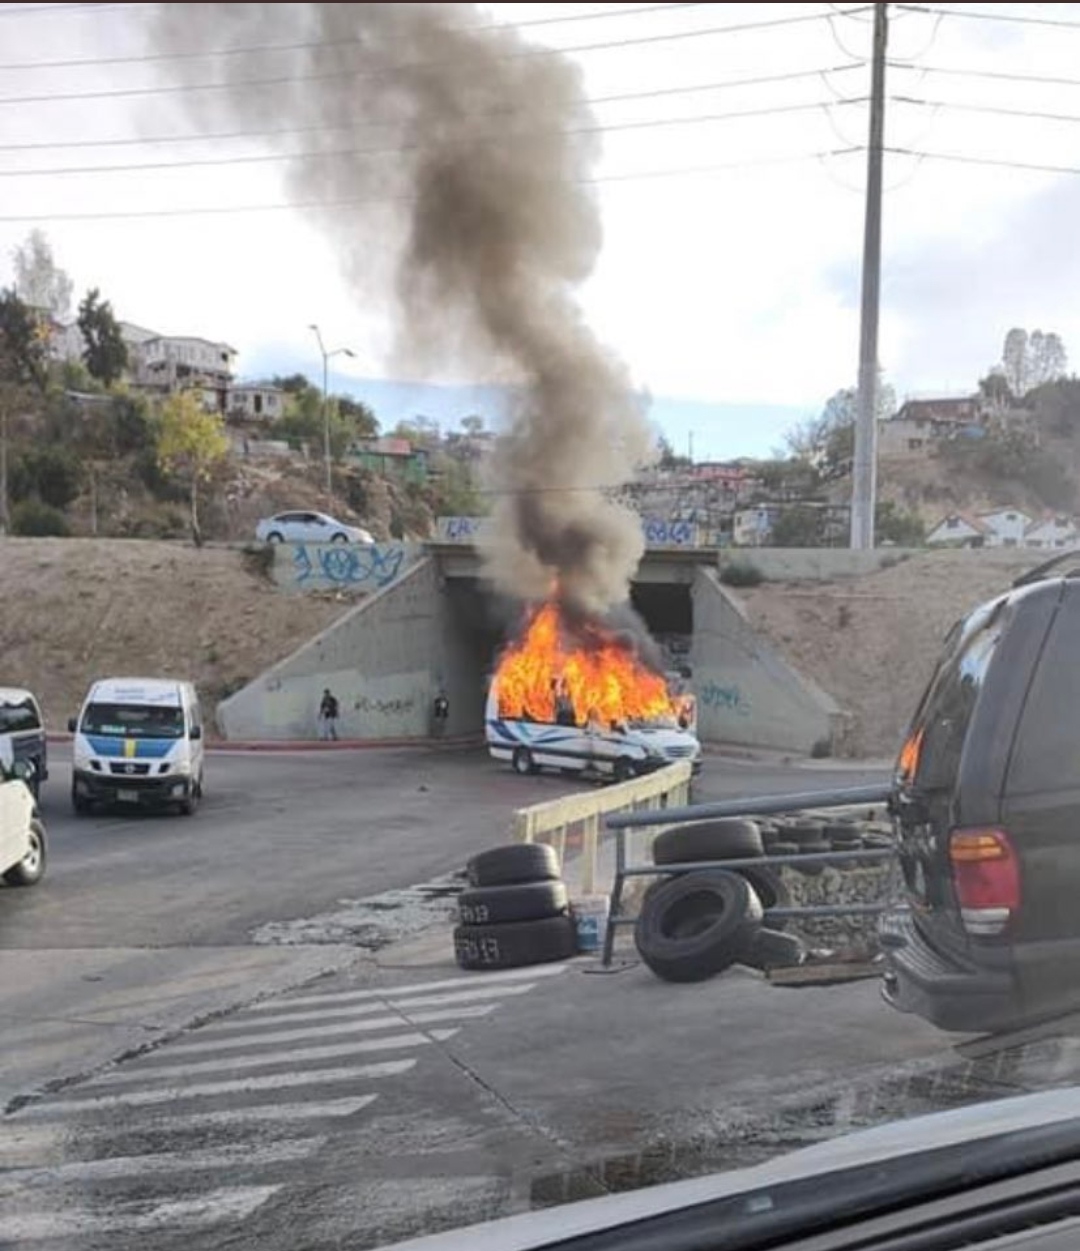 Ataque de sicarios deja varios muertos en Tijuana  TX56XH7UL5DV5G6CJJRL4ACWNA